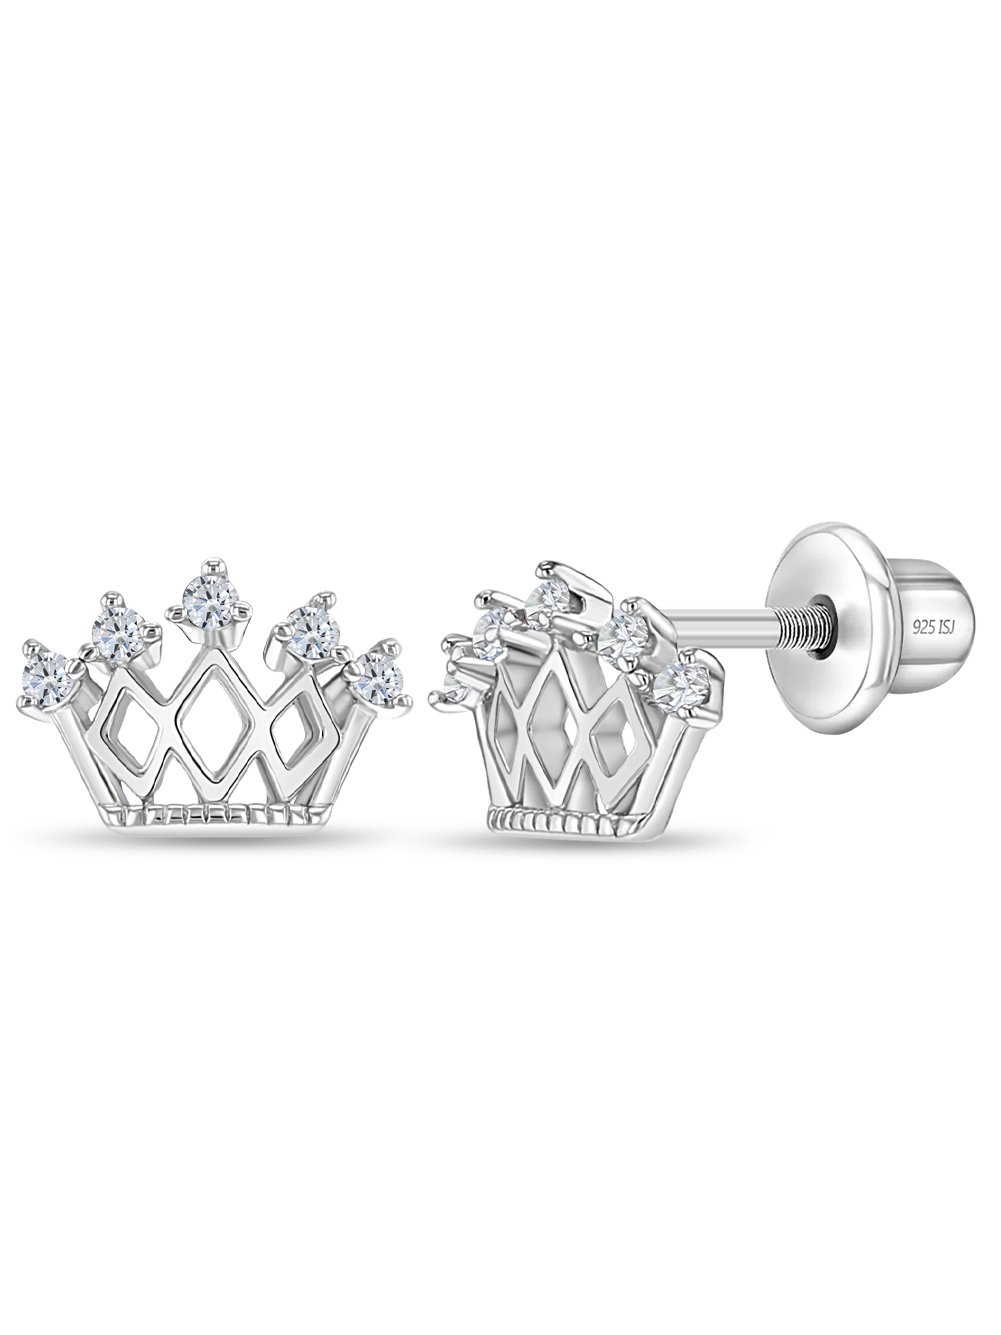 925 Sterling Silver CZ Princess Crown Screw Back Earrings Little Girls